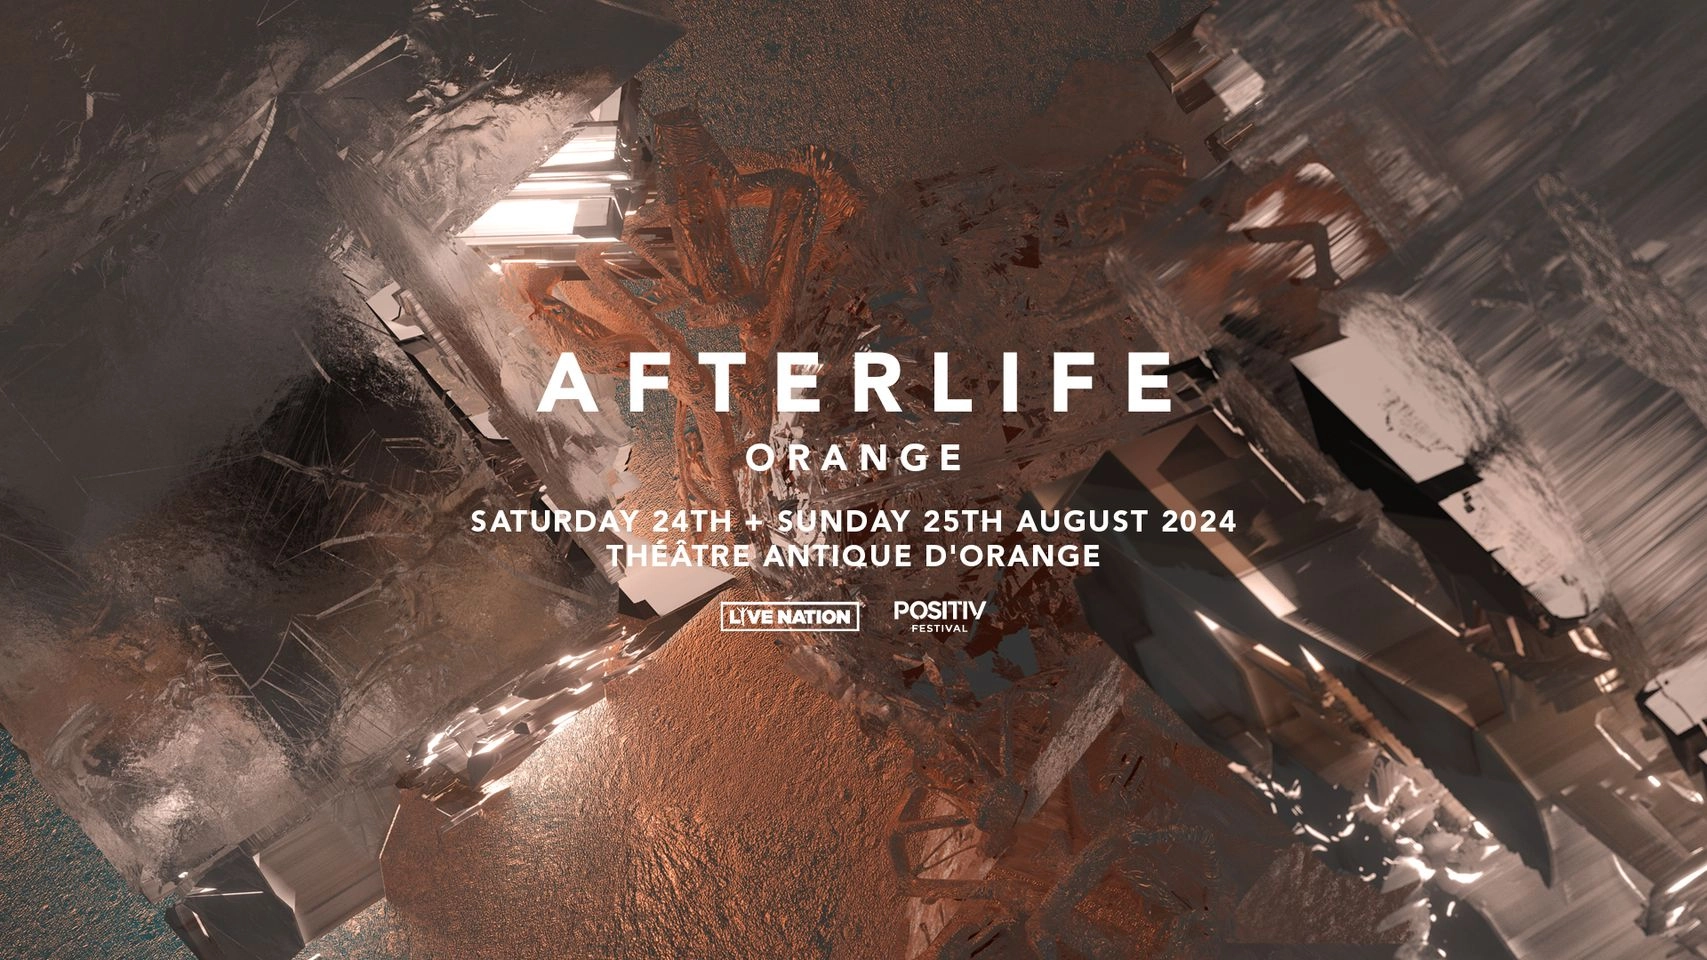 Afterlife Orange 2024 - Dimanche at Theatre Antique Orange Tickets